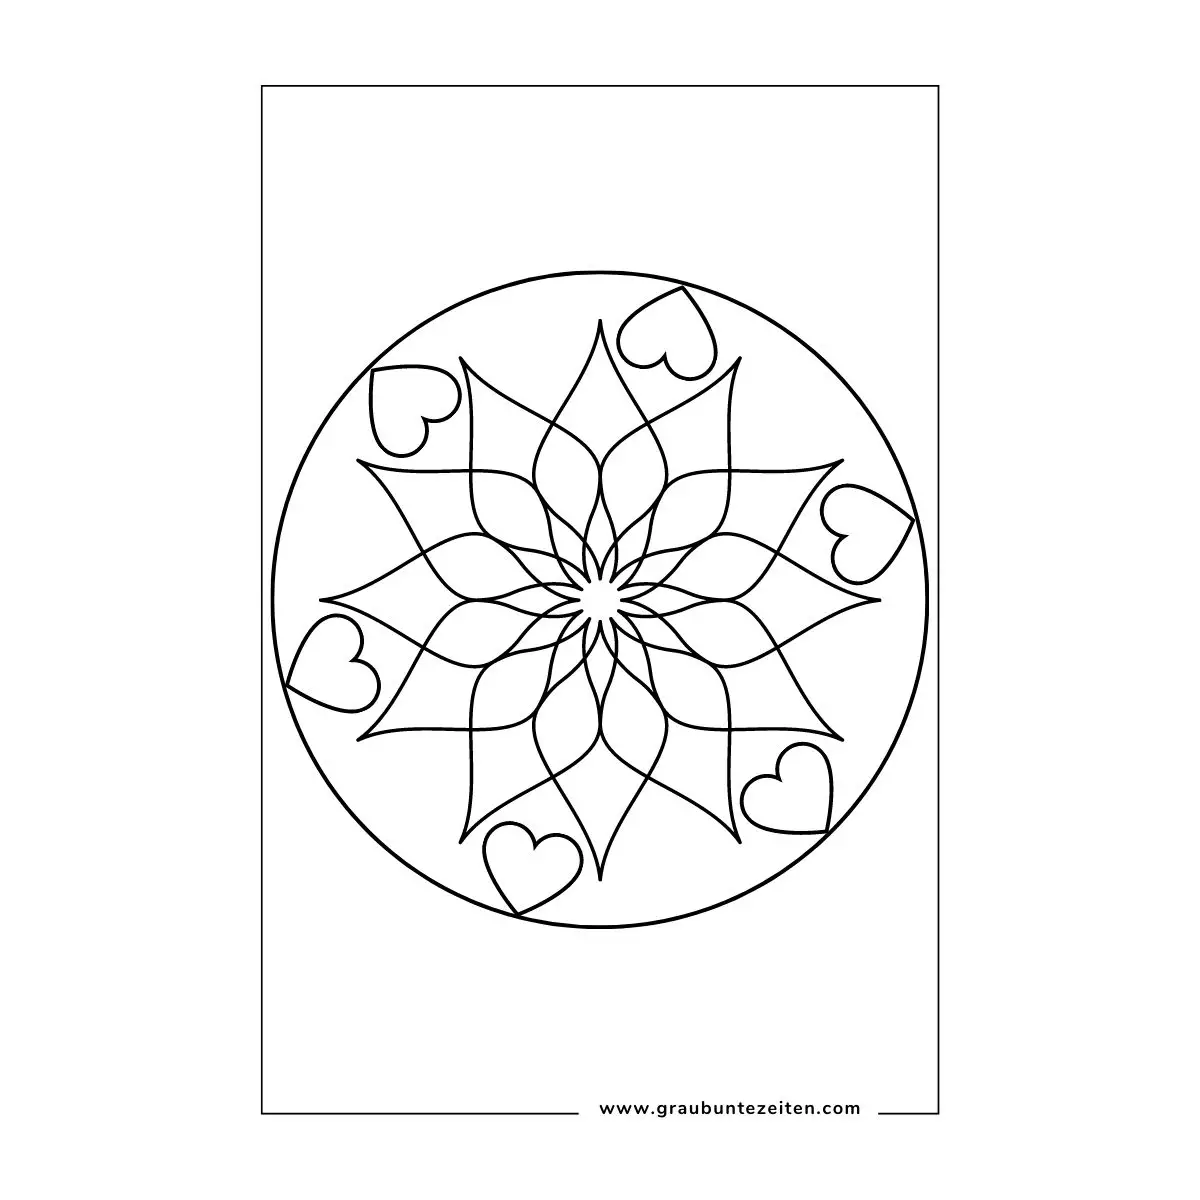 Ausmalbild Mandala. In der Mitte ist eine blütenähnliche Form. Nach außen hin kommen geschwungene Linien. Ganz außen sind Herzen.